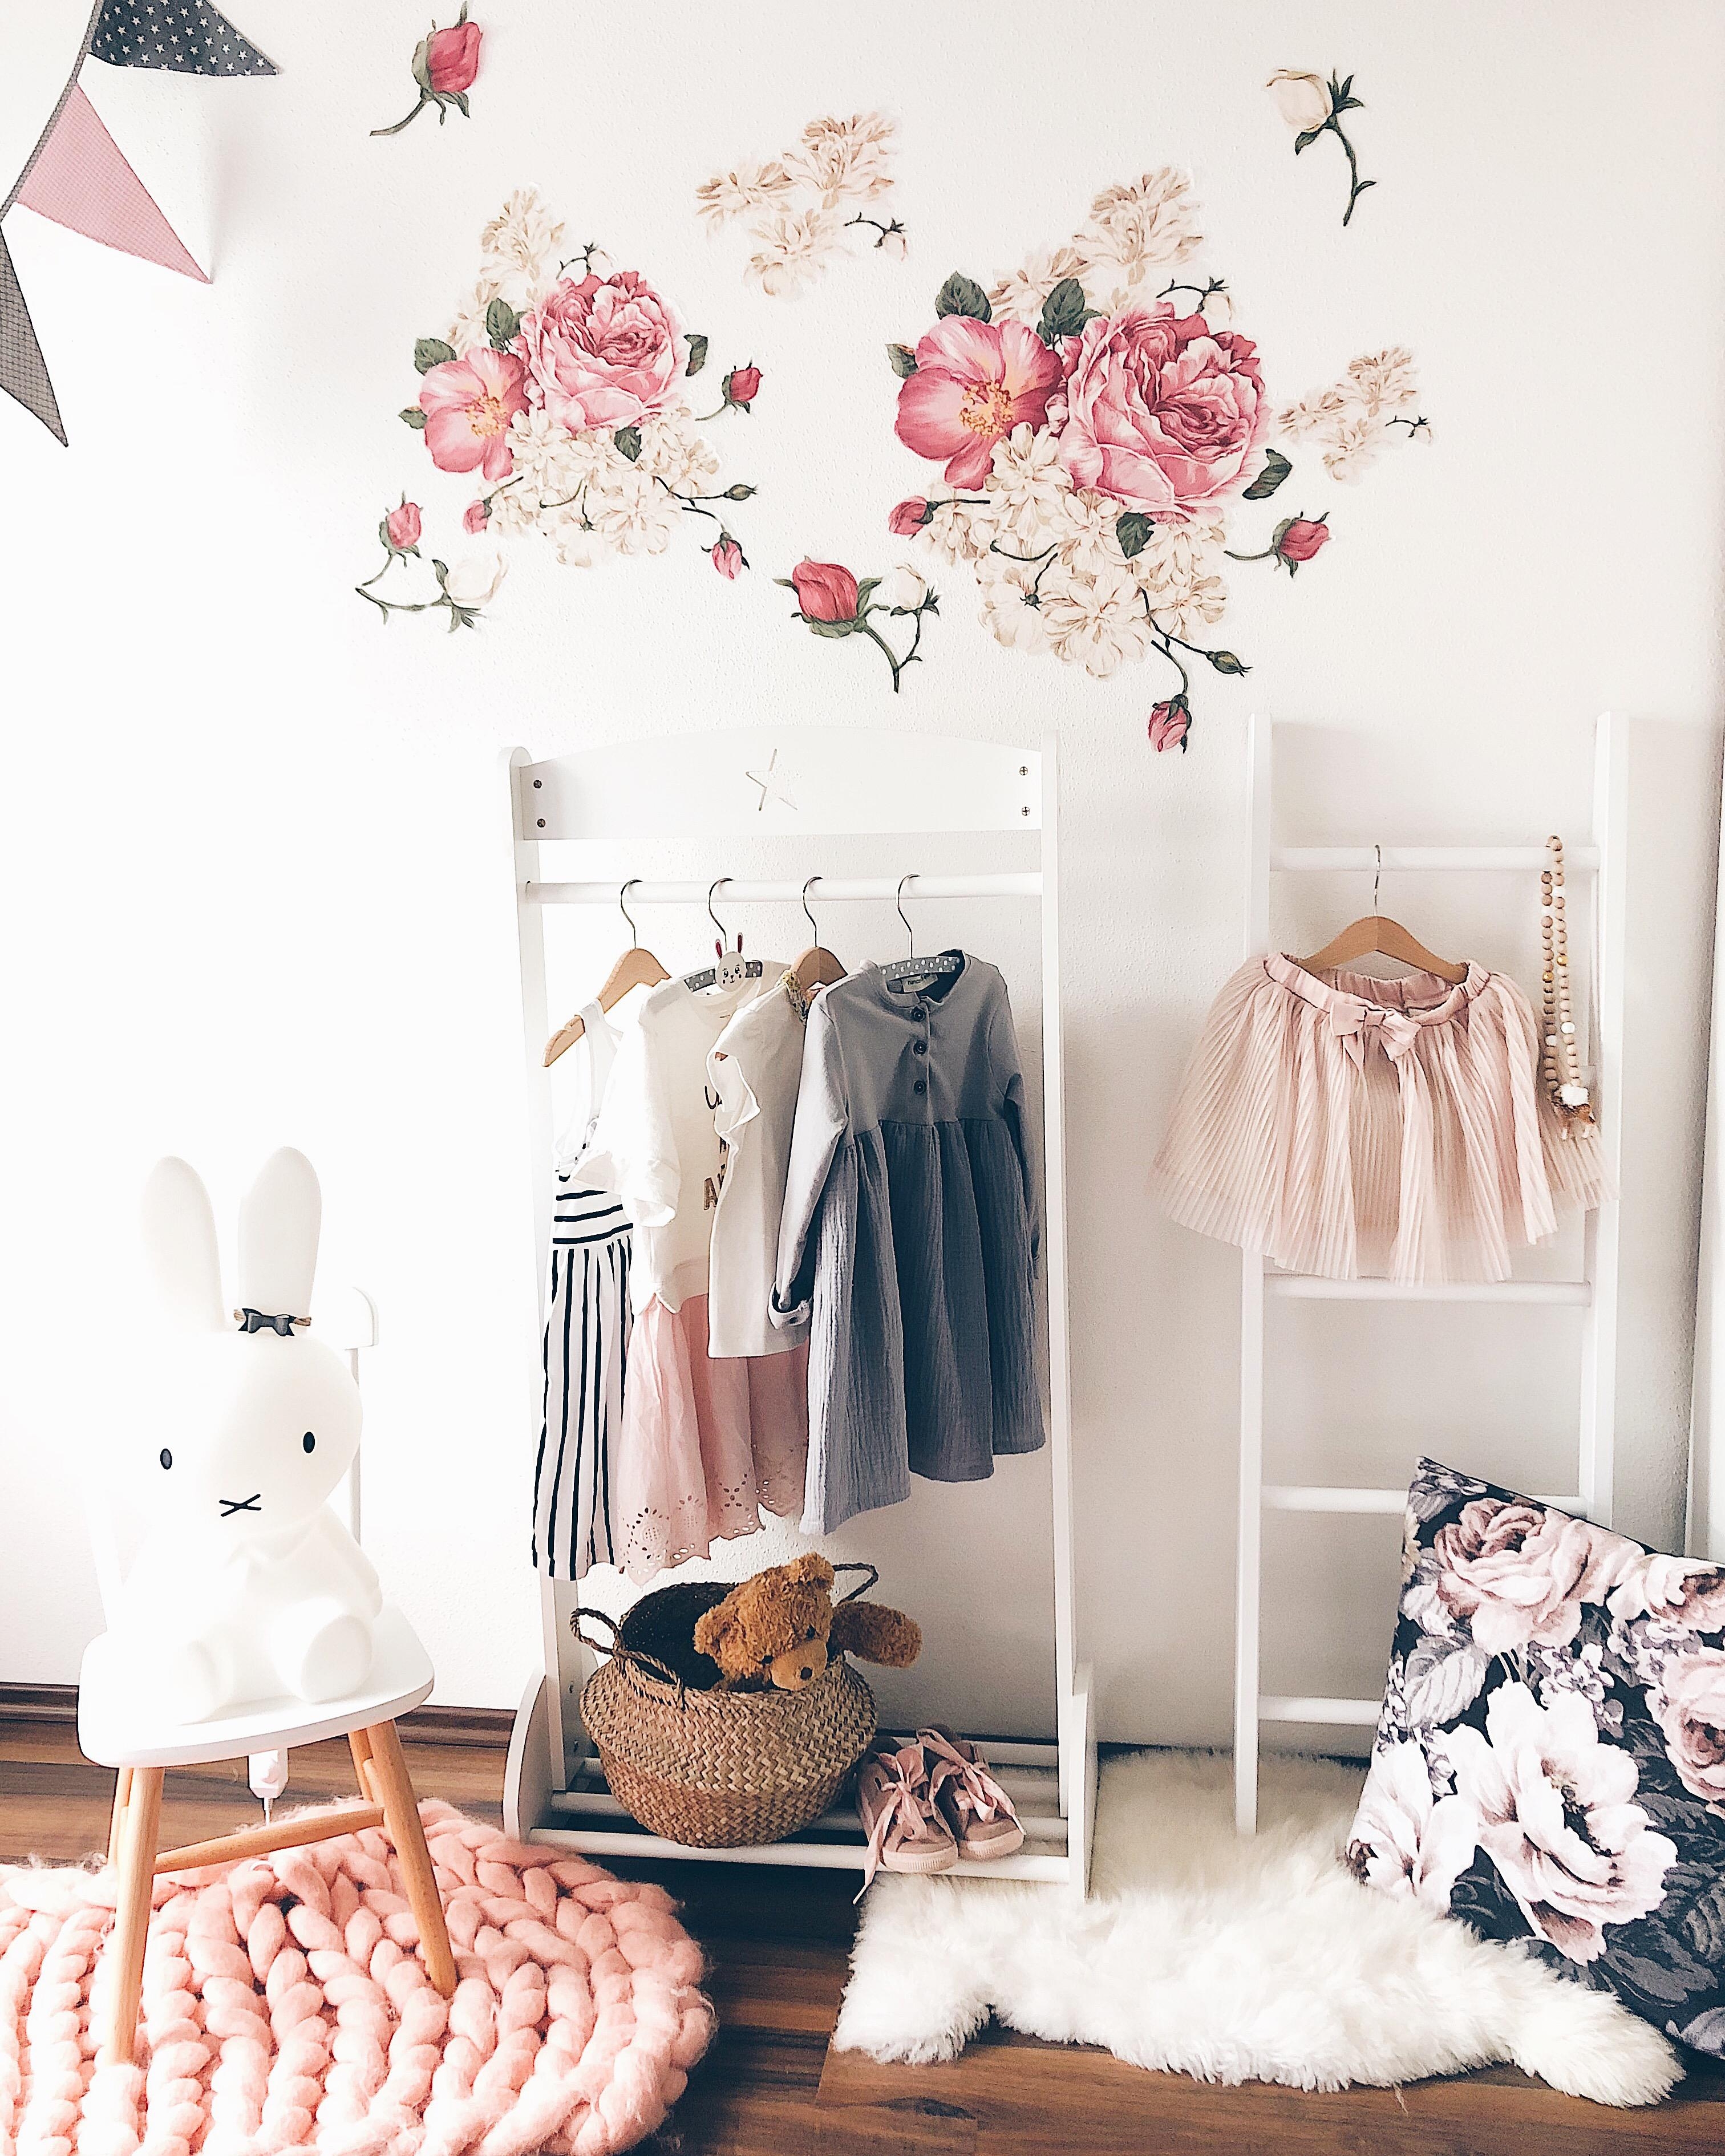 Kinderzimmer Details 💖 
#wallpaper #flowers #blumenkind #kleiderstange